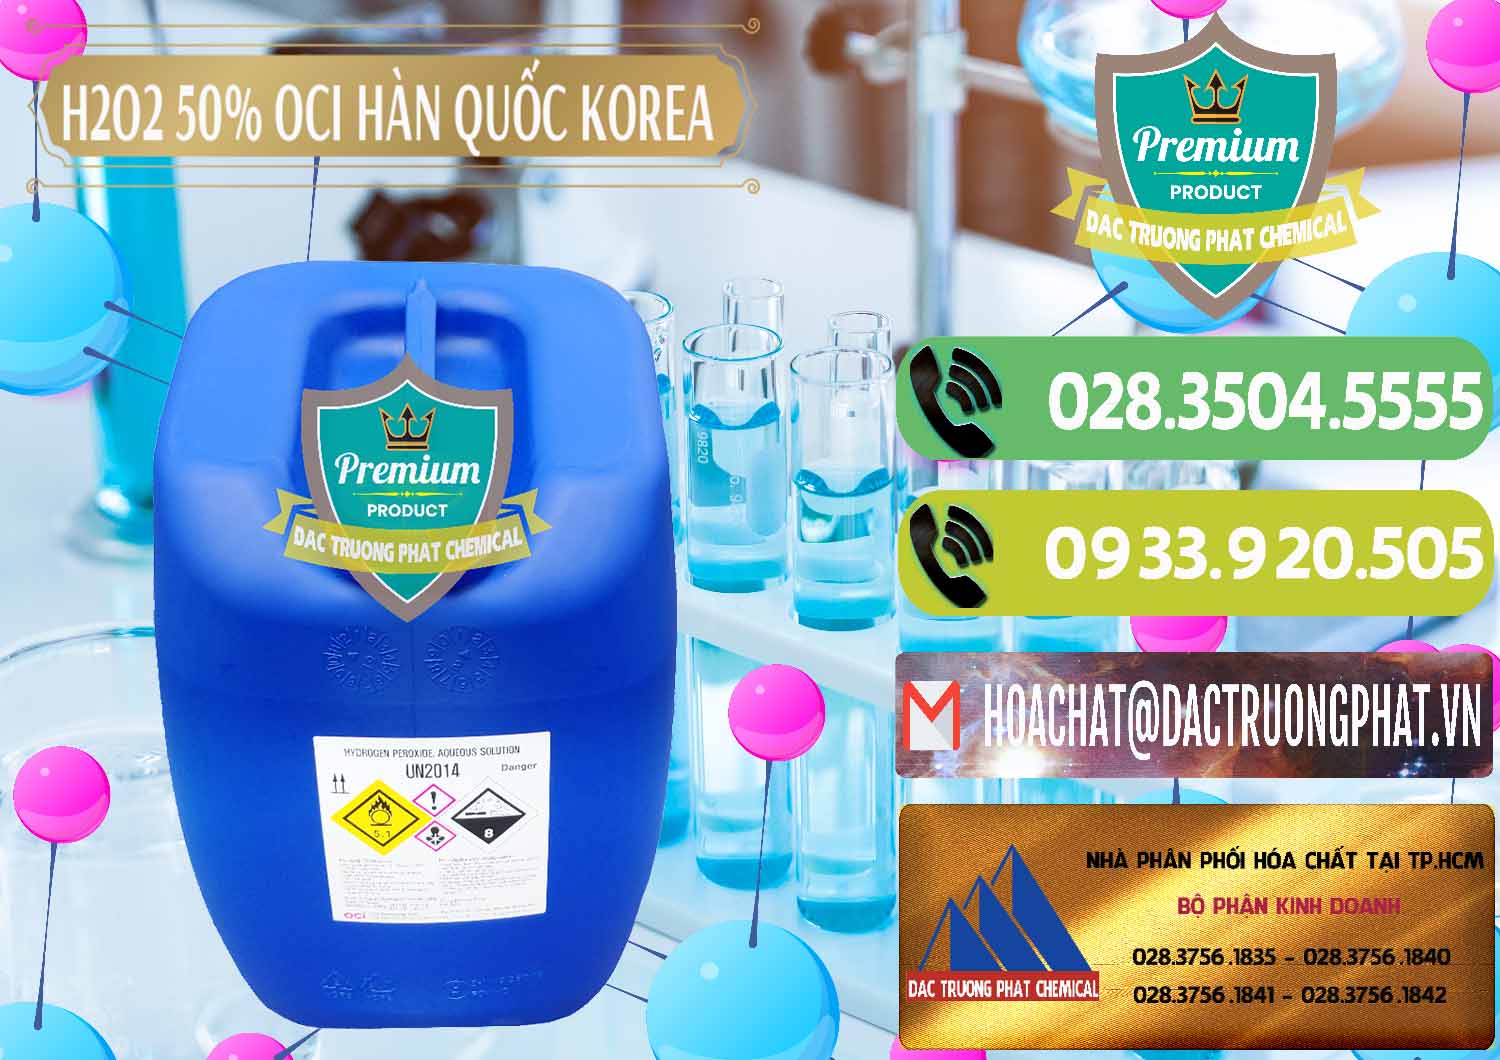 Chuyên kinh doanh ( bán ) H2O2 - Hydrogen Peroxide 50% OCI Hàn Quốc Korea - 0075 - Nơi chuyên cung ứng và phân phối hóa chất tại TP.HCM - hoachatmientay.vn